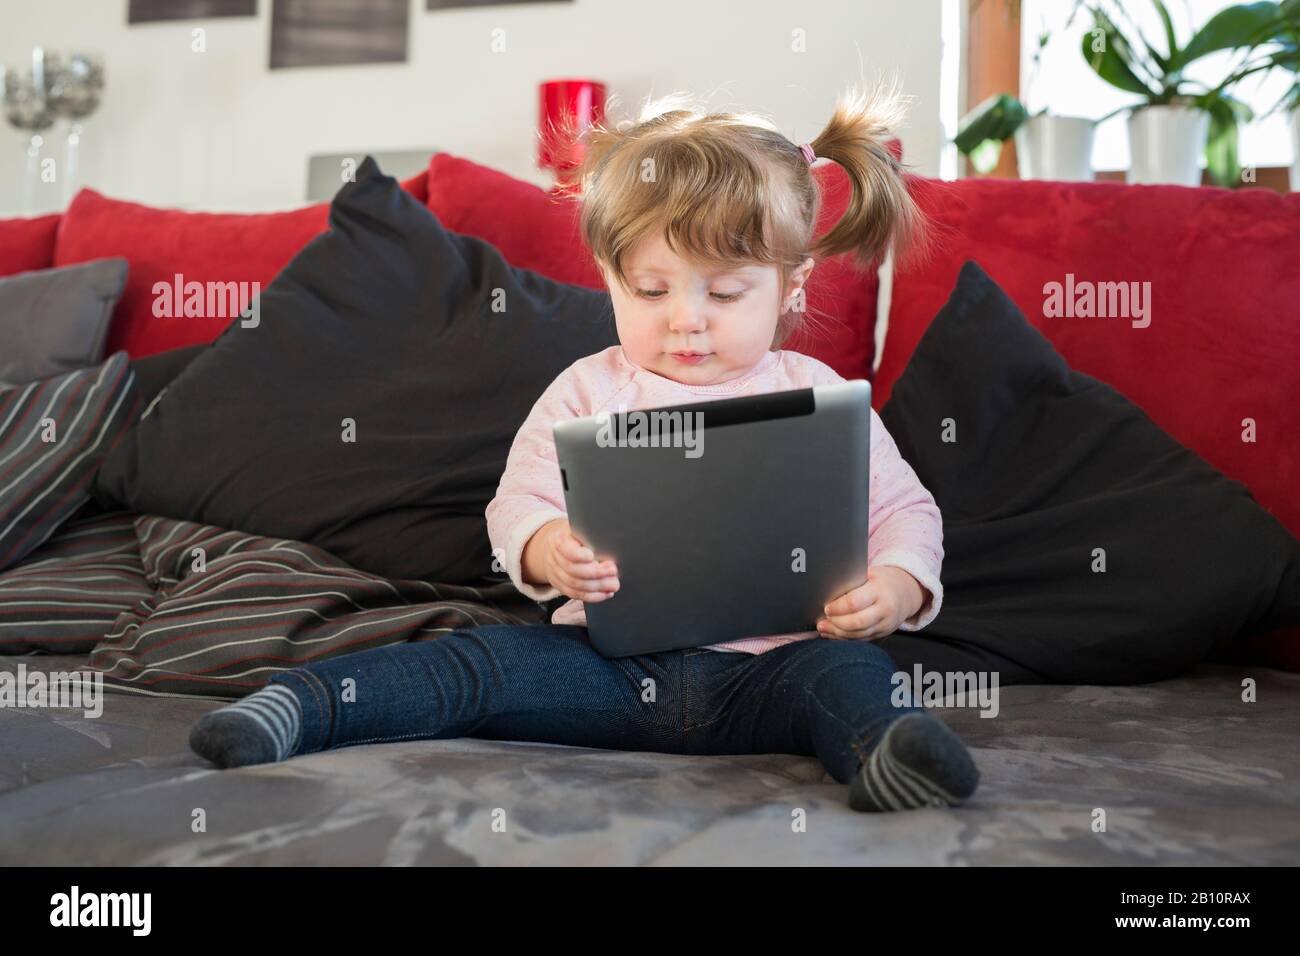 Kleines Mädchen mit Tablet-pc Stockfoto